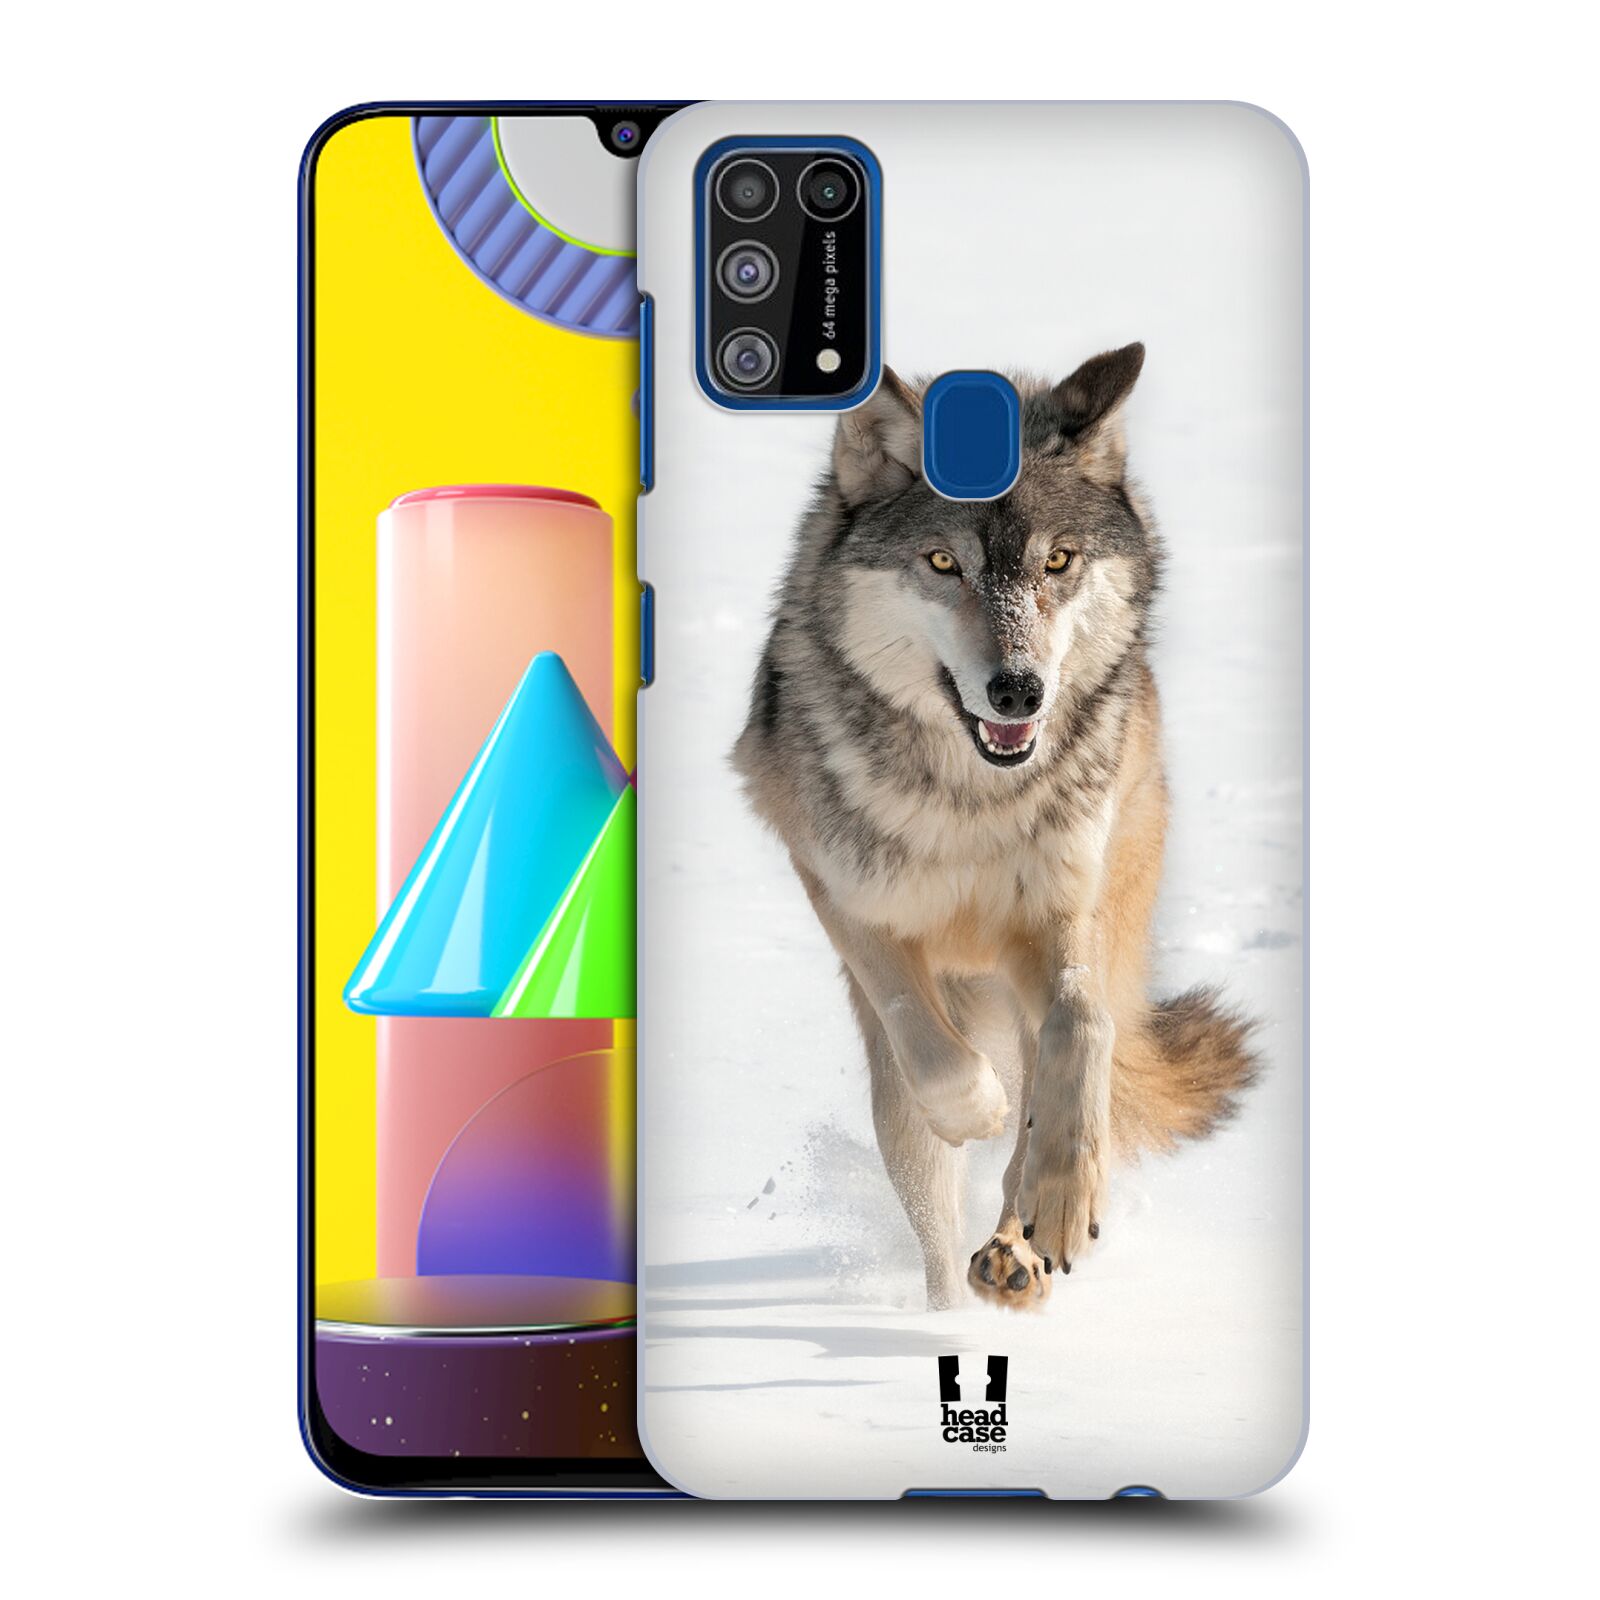 Zadní obal pro mobil Samsung Galaxy M31 - HEAD CASE - Svět zvířat divoký vlk